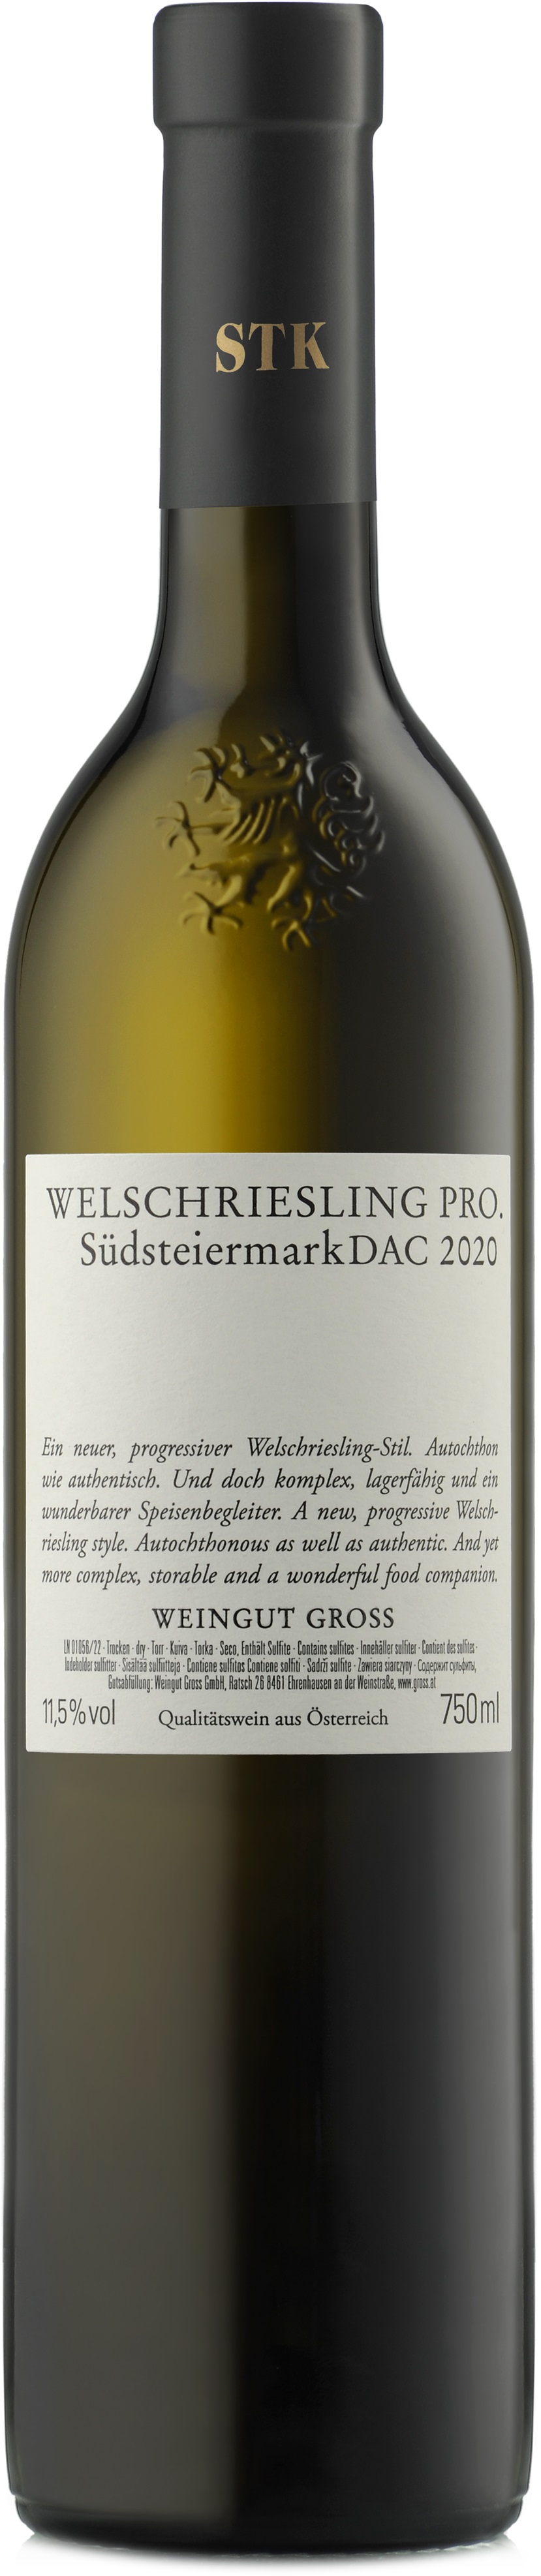 Gross Welschriesling Pro 2020 0.75 l Steiermark Weisswein